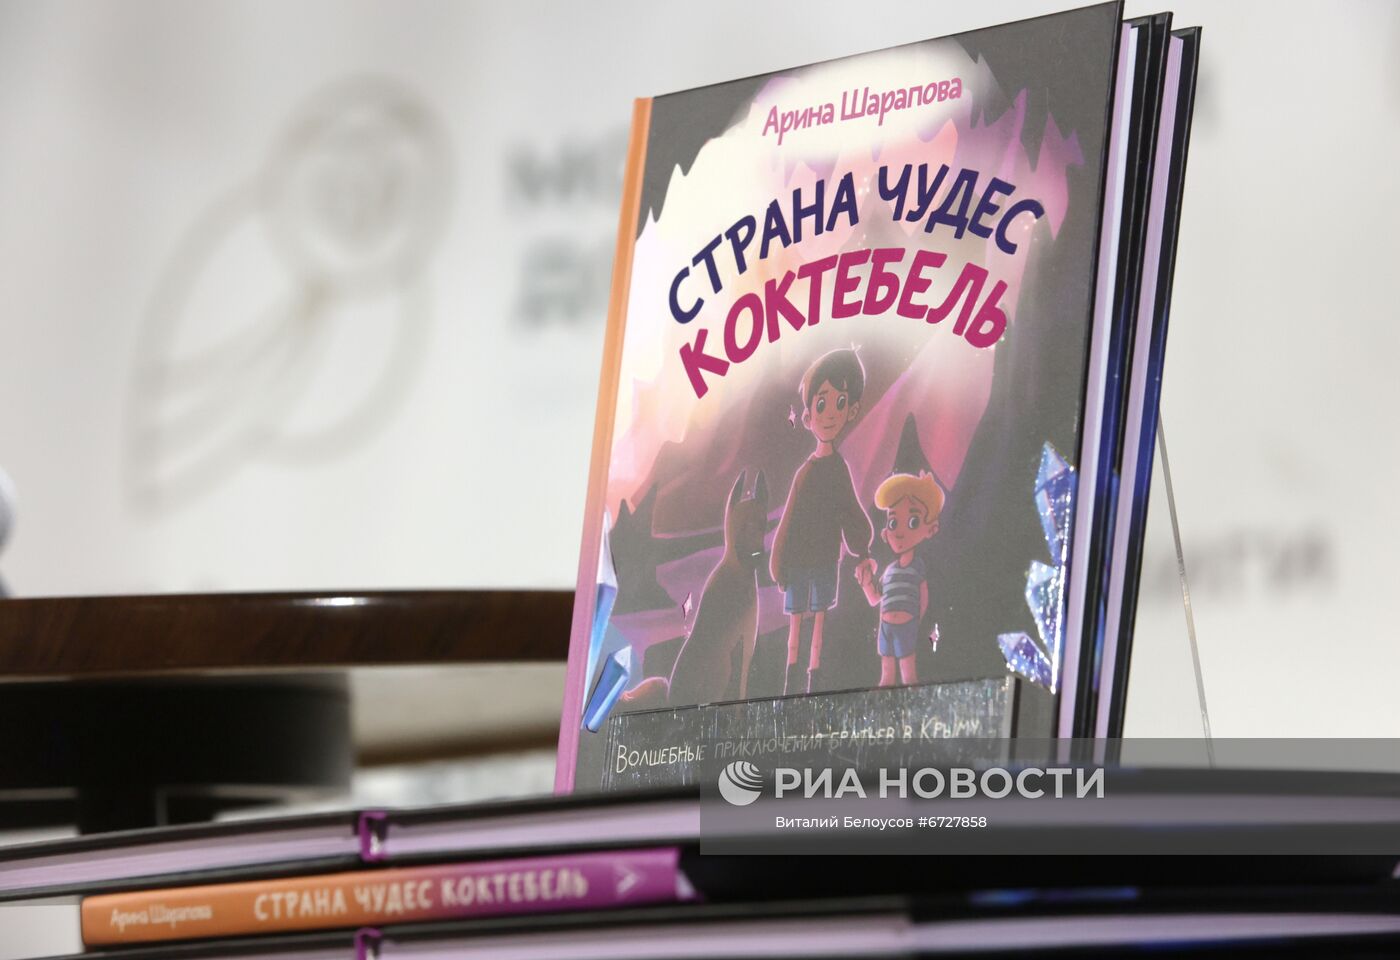 Презентация книги "Страна чудес Коктебель" Арины Шараповой